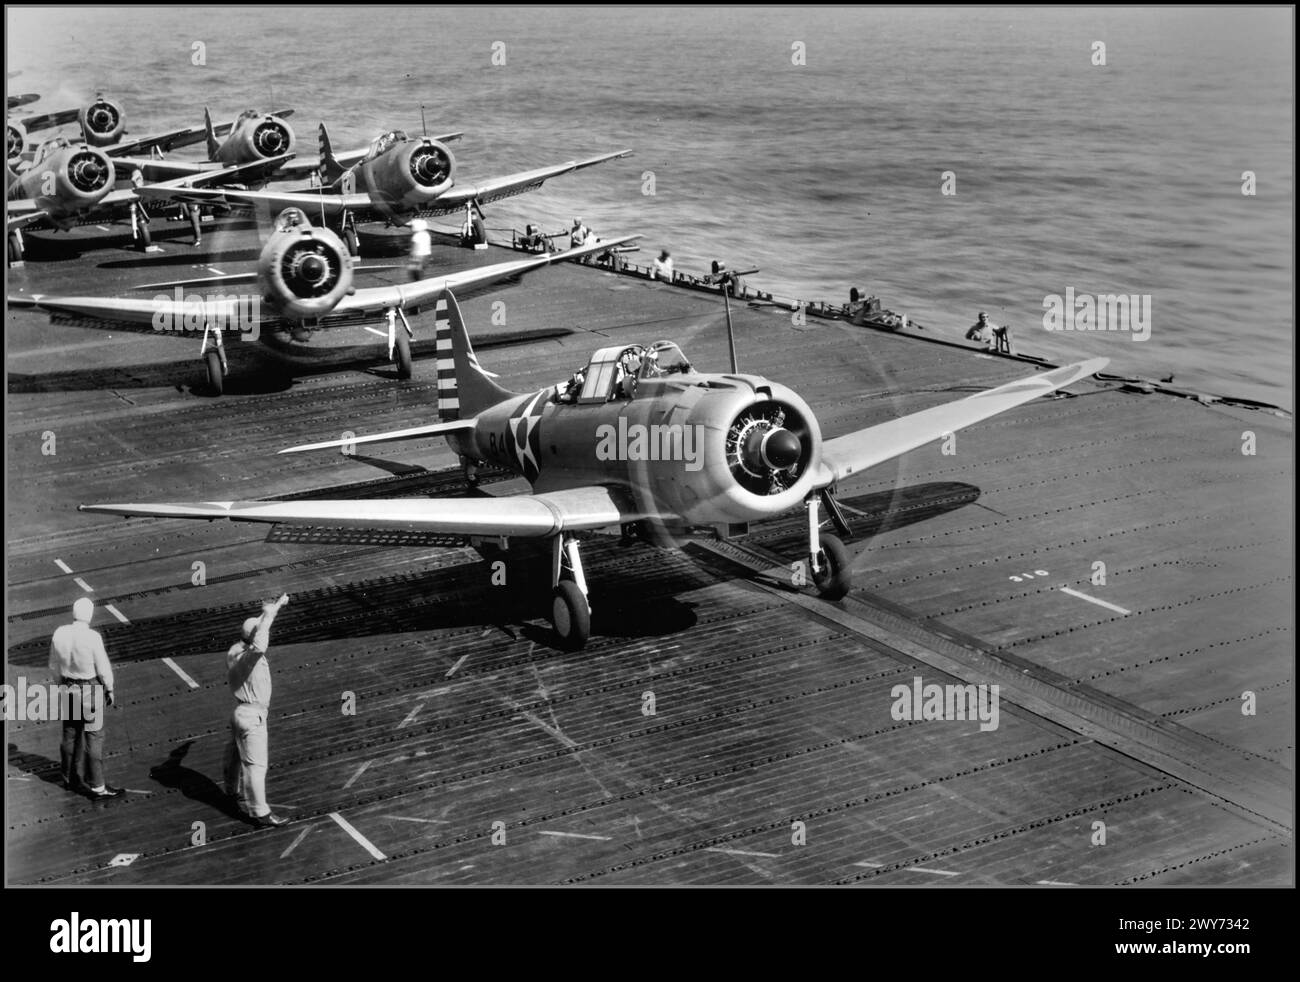 Los bombarderos estadounidenses Douglas SBD-3 Dauntless del 6º Escuadrón de Bombas (Escuadrón de Bombardeo 6, VB-6) se preparan para despegar del portaaviones USS Enterprise (CV-6) para incursionar en la Isla Wake. 1941 El segundo avión en el marco es el comandante del grupo aéreo, el teniente comandante Howard Young. Esto se indica con la designación GC (Comandante del Grupo) en la parte delantera de la carcasa del motor. La Batalla de Wake Island fue una batalla de la campaña del Pacífico de la Segunda Guerra Mundial, que se libró en Wake Island. Fechas: 8 dic 1941 – 23 dic 1941 Foto de stock